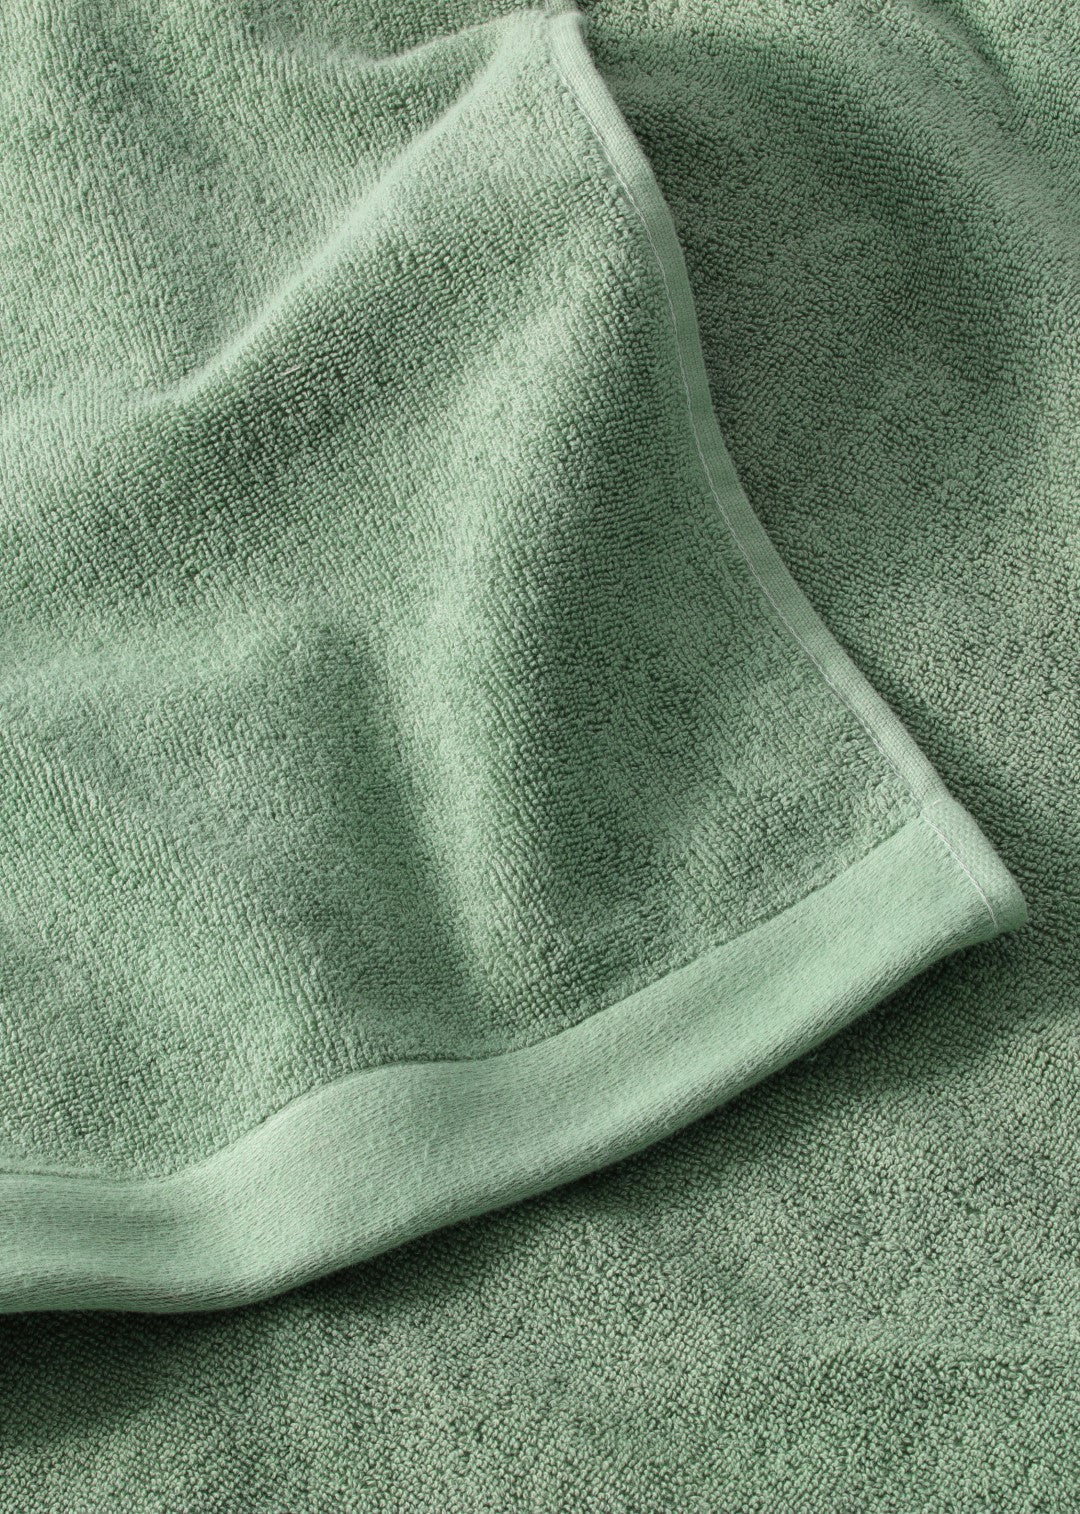 Handtuch Baumwolle Dunkelgrün 30 x 50 cm